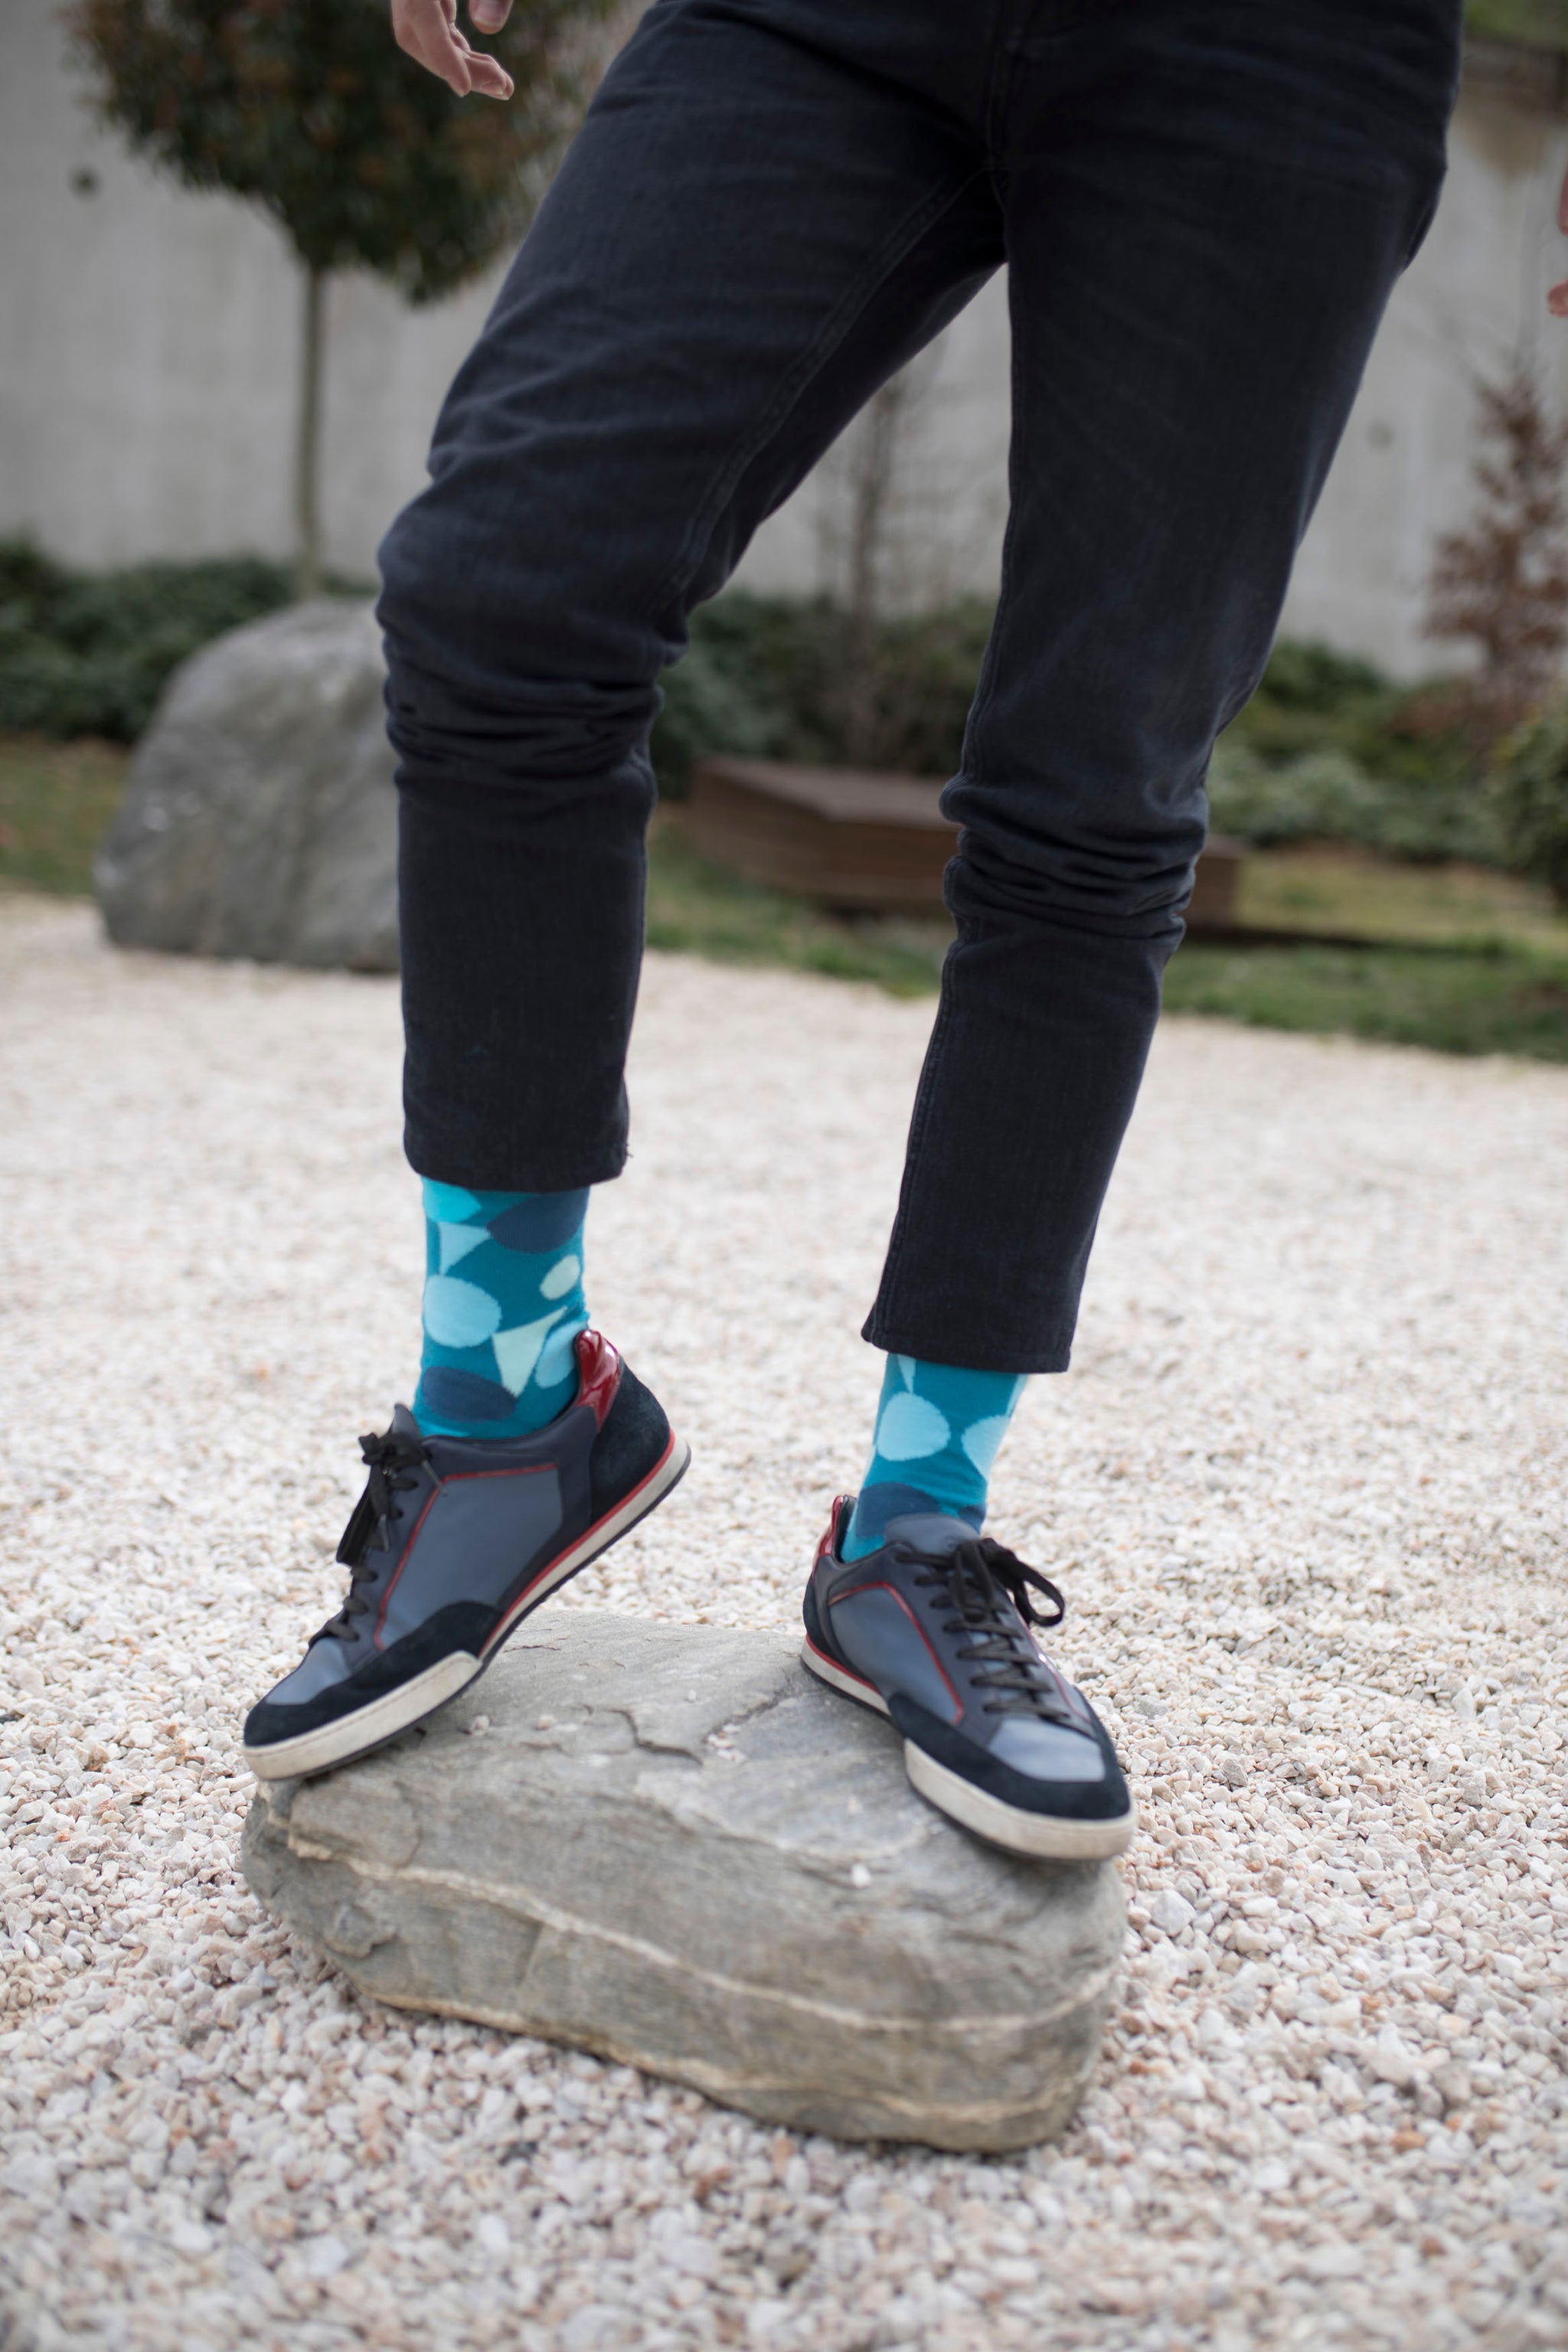 Men's Geometric Shapes Socks